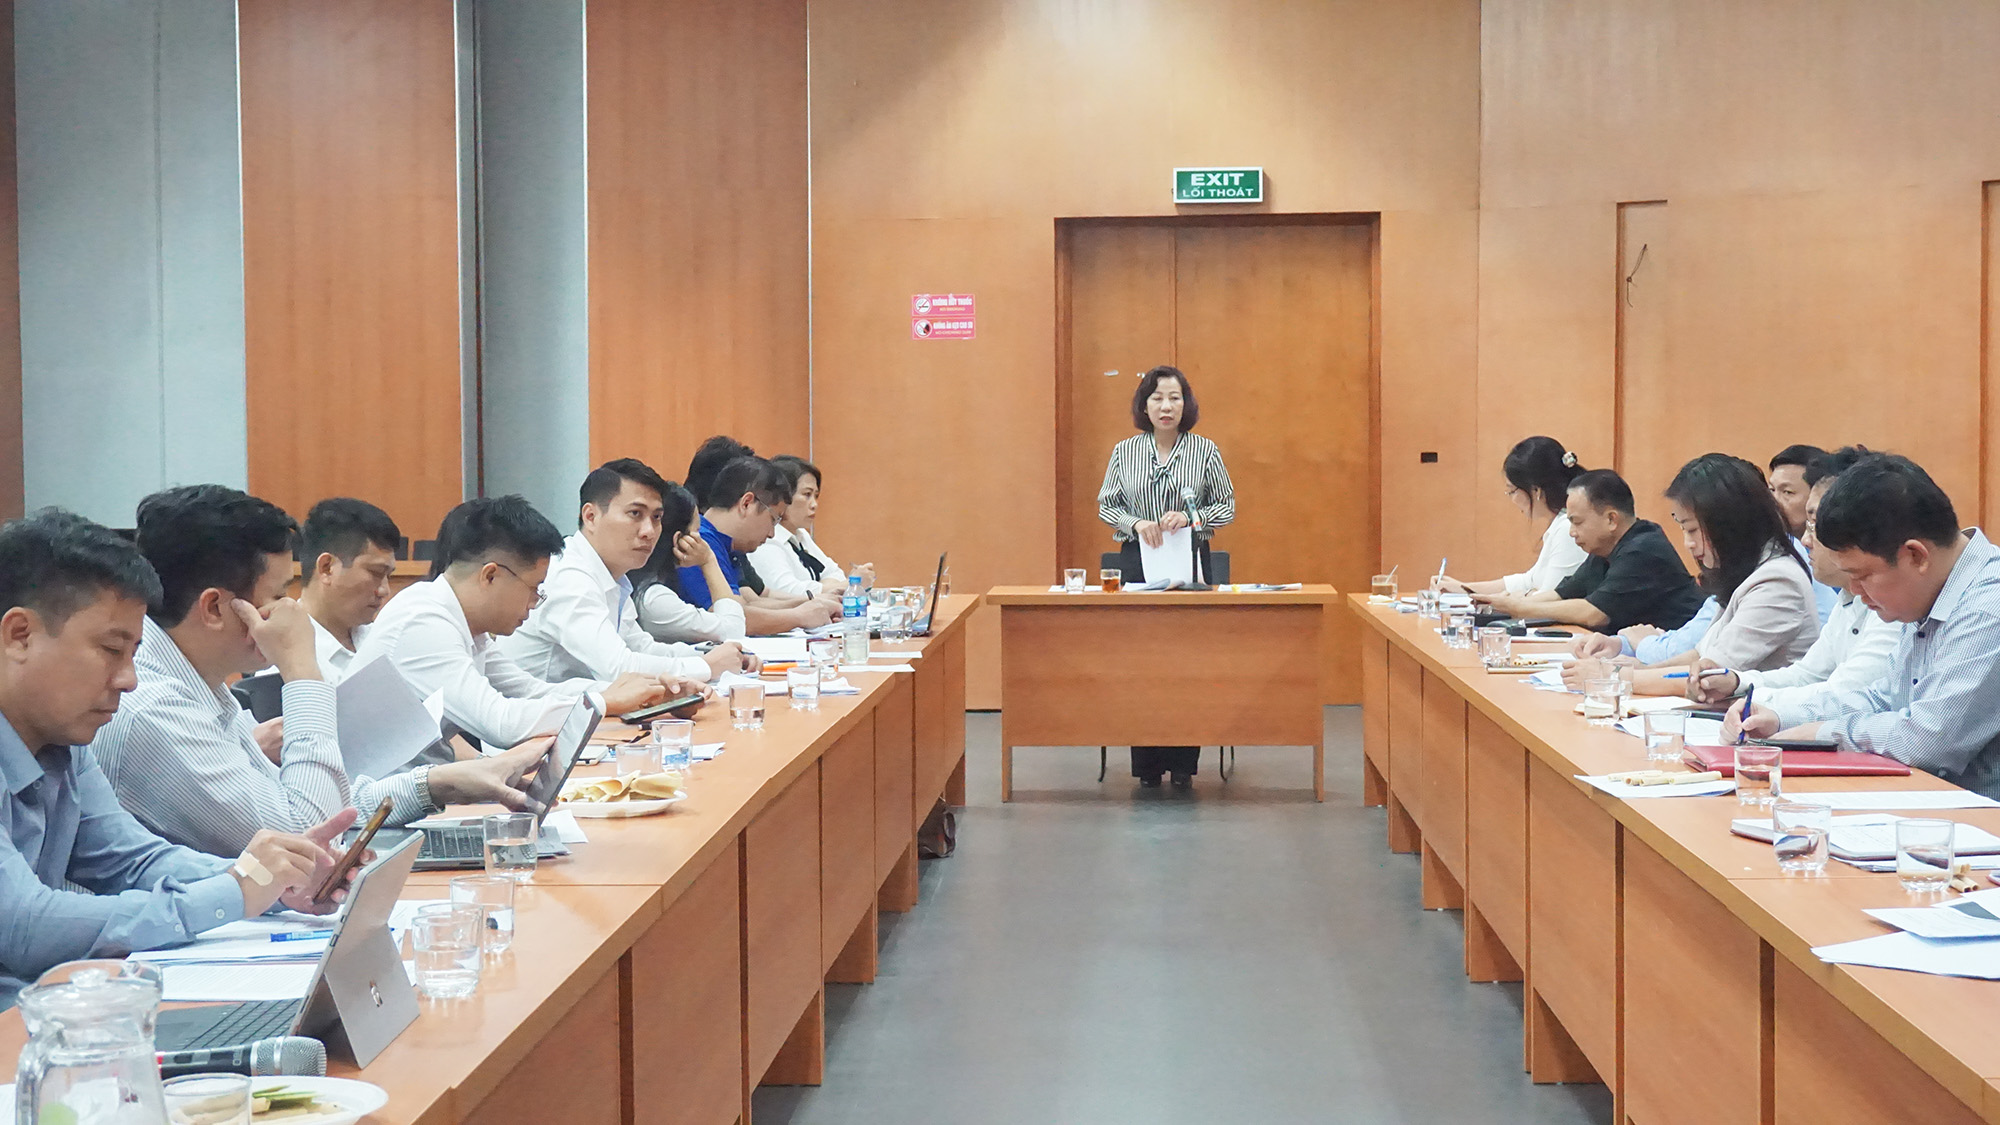 đồng chí Vũ Thị Thu Thủy, Phó Chủ tịch UBND tỉnh phát biểu chỉ đạo tại buổi kiểm tra.